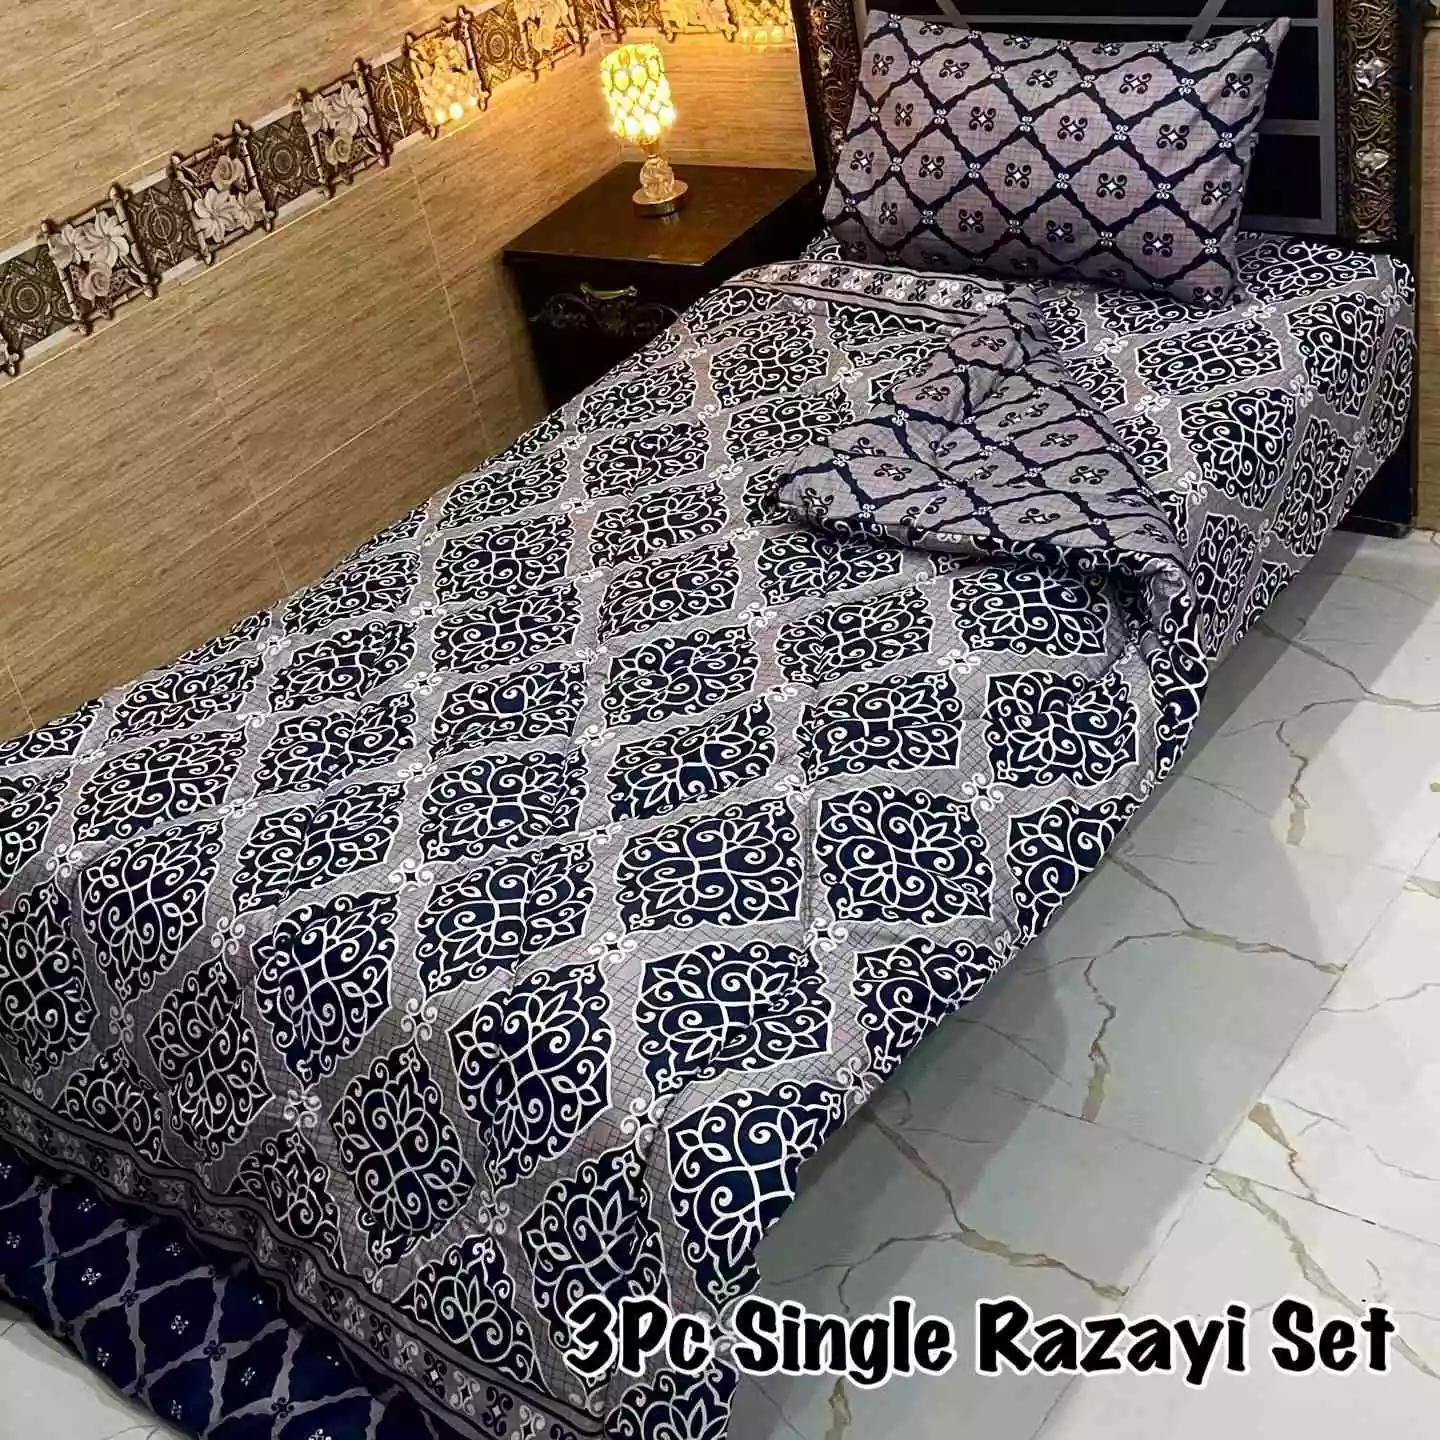 DF-VRSSB-11: DFY 3Pc Single Bed Vicky Razai Set